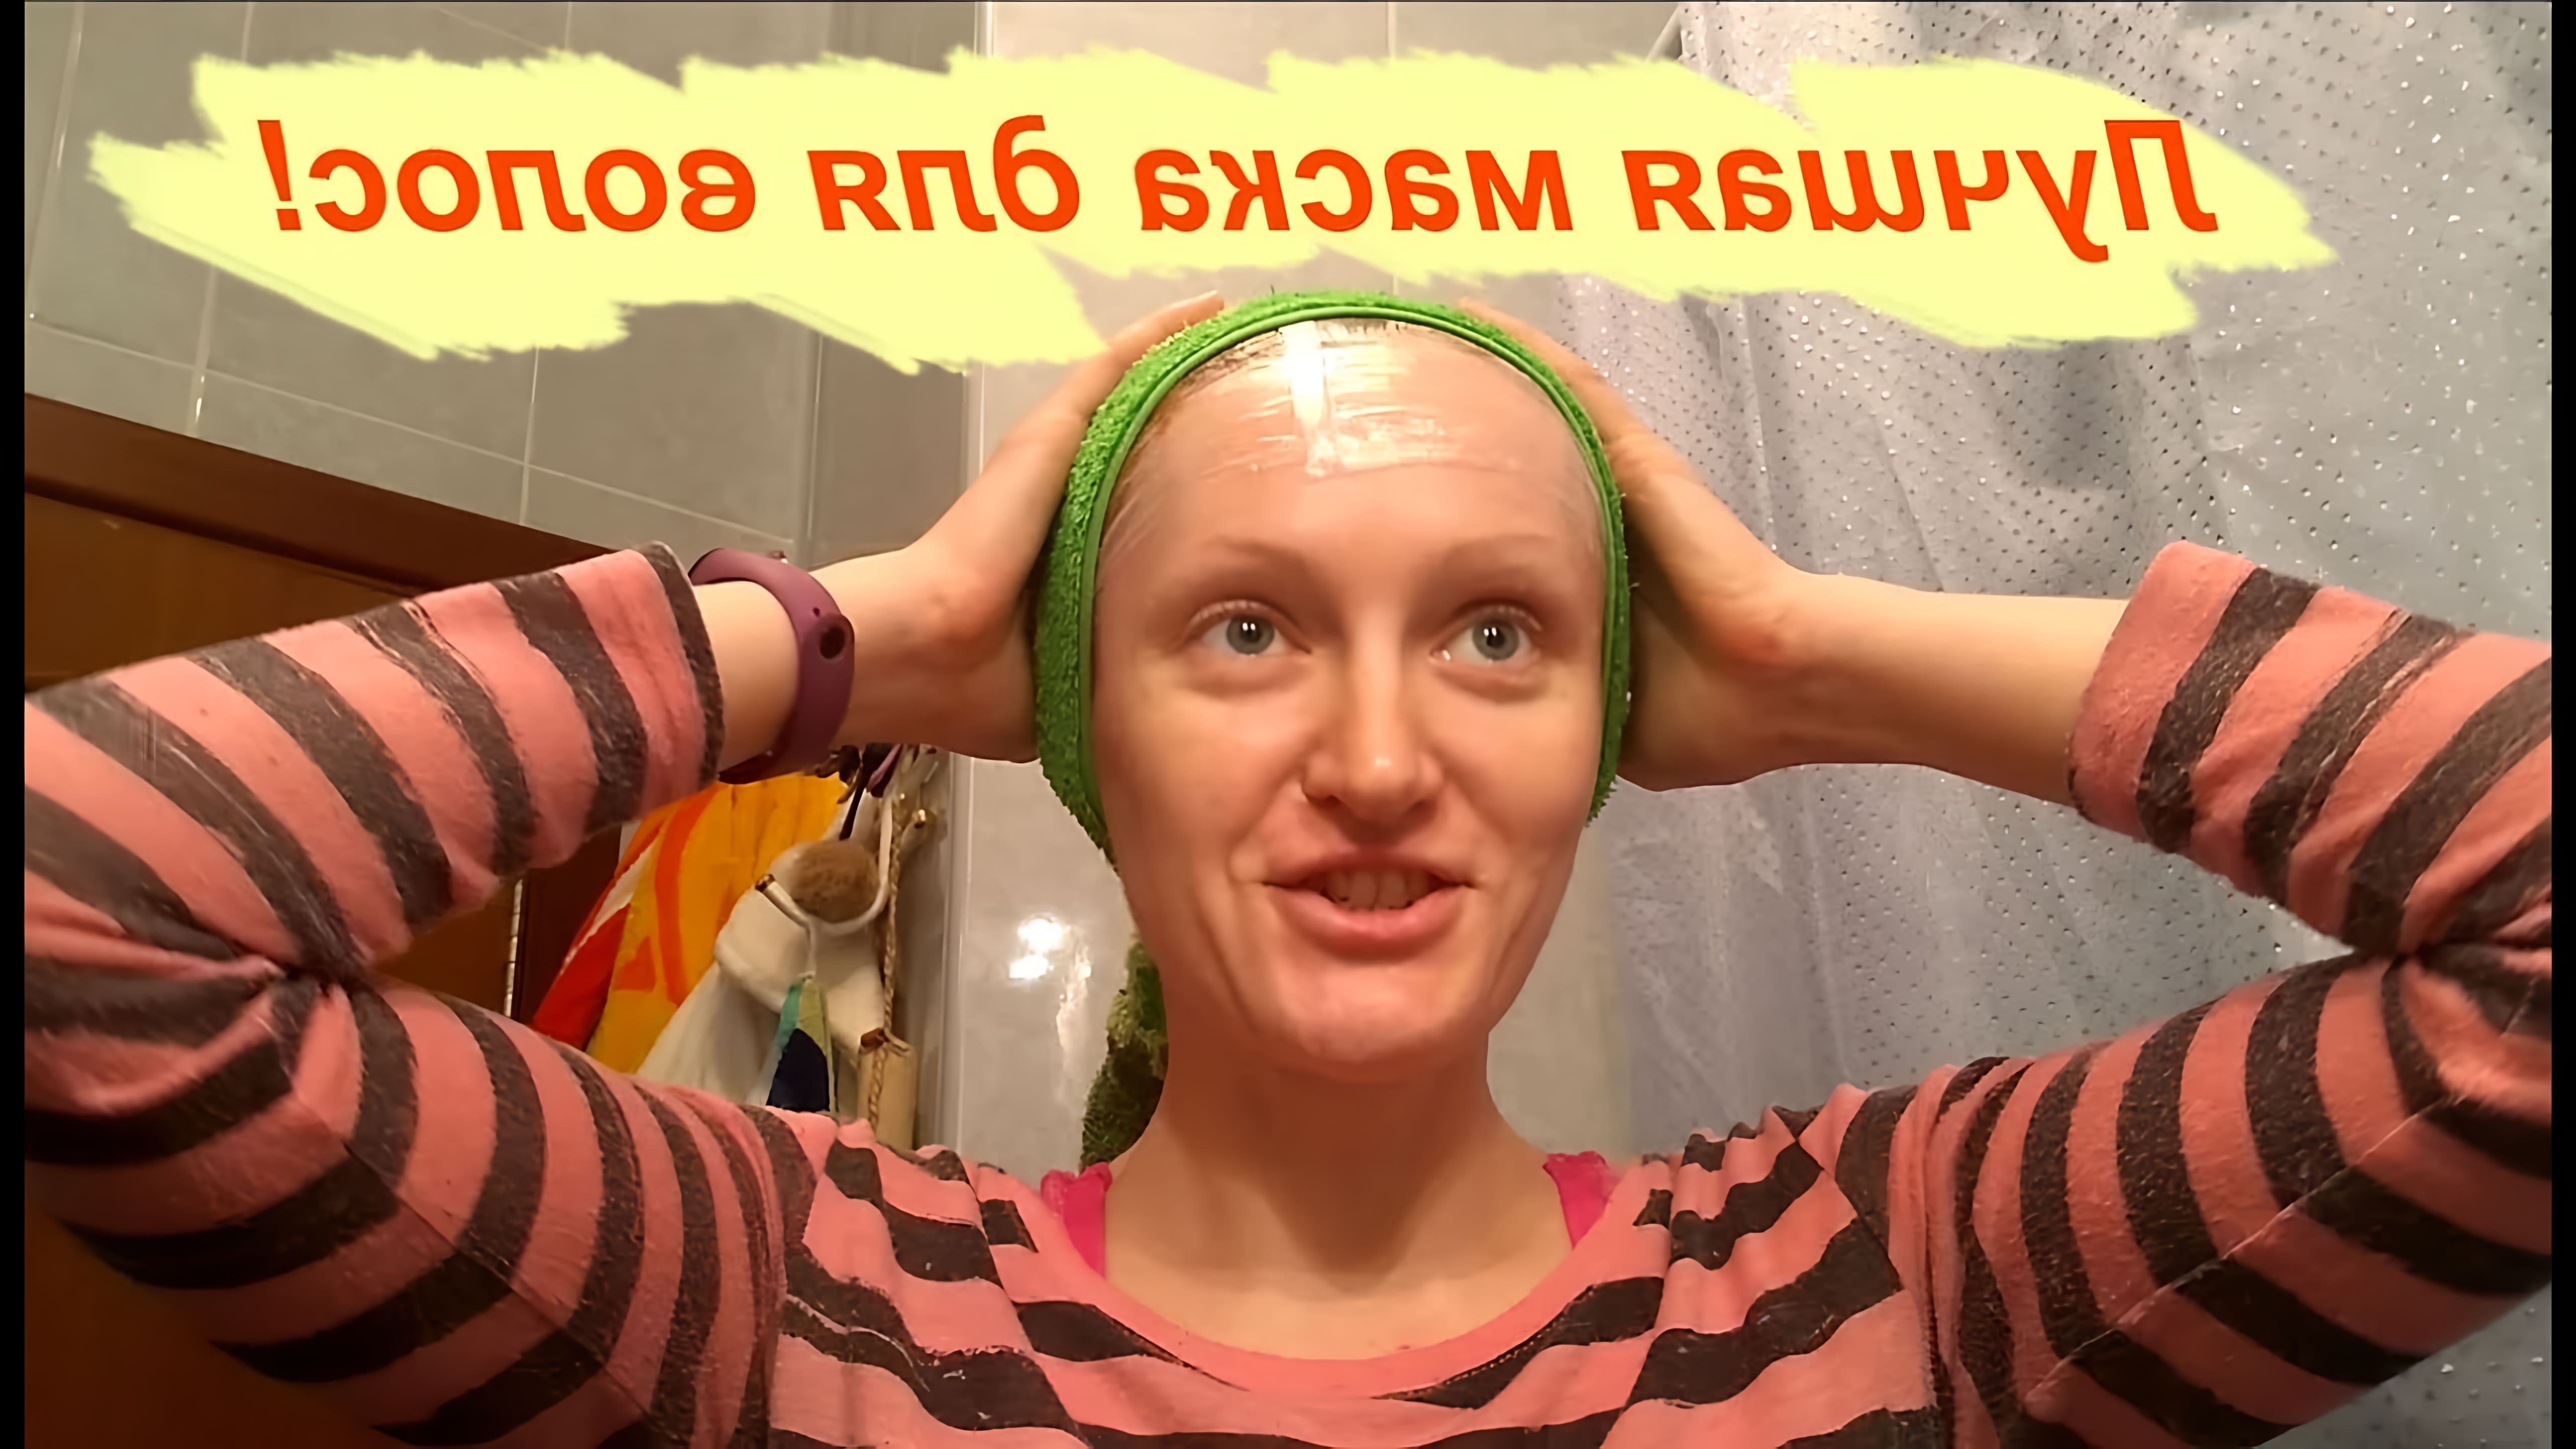 В этом видео девушка рассказывает о своей любимой маске для волос, которая помогает предотвратить выпадение волос и стимулирует их рост